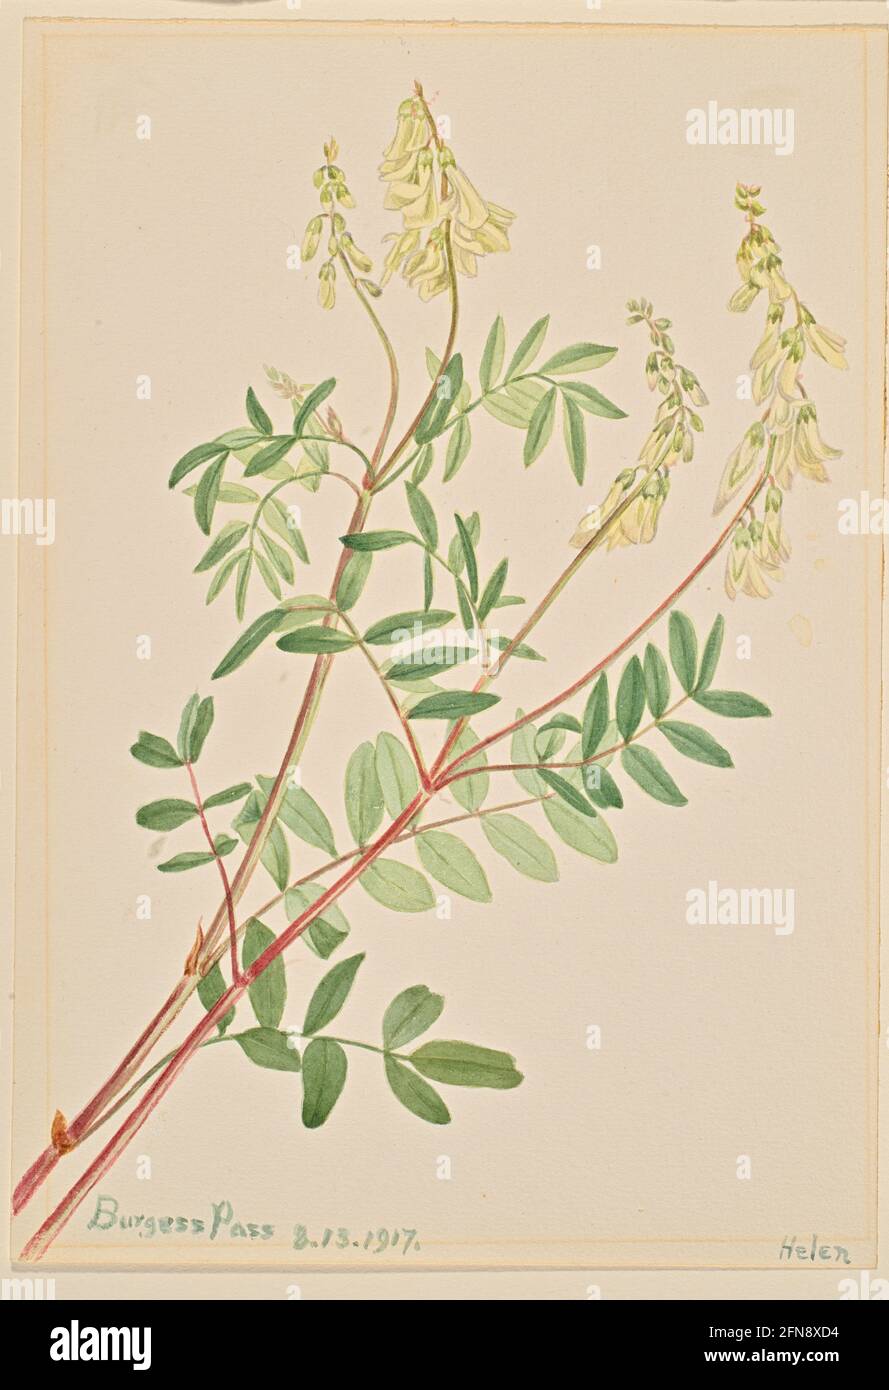 Hedysarum (Hedysarum sulphurescens), 1917. Stock Photo